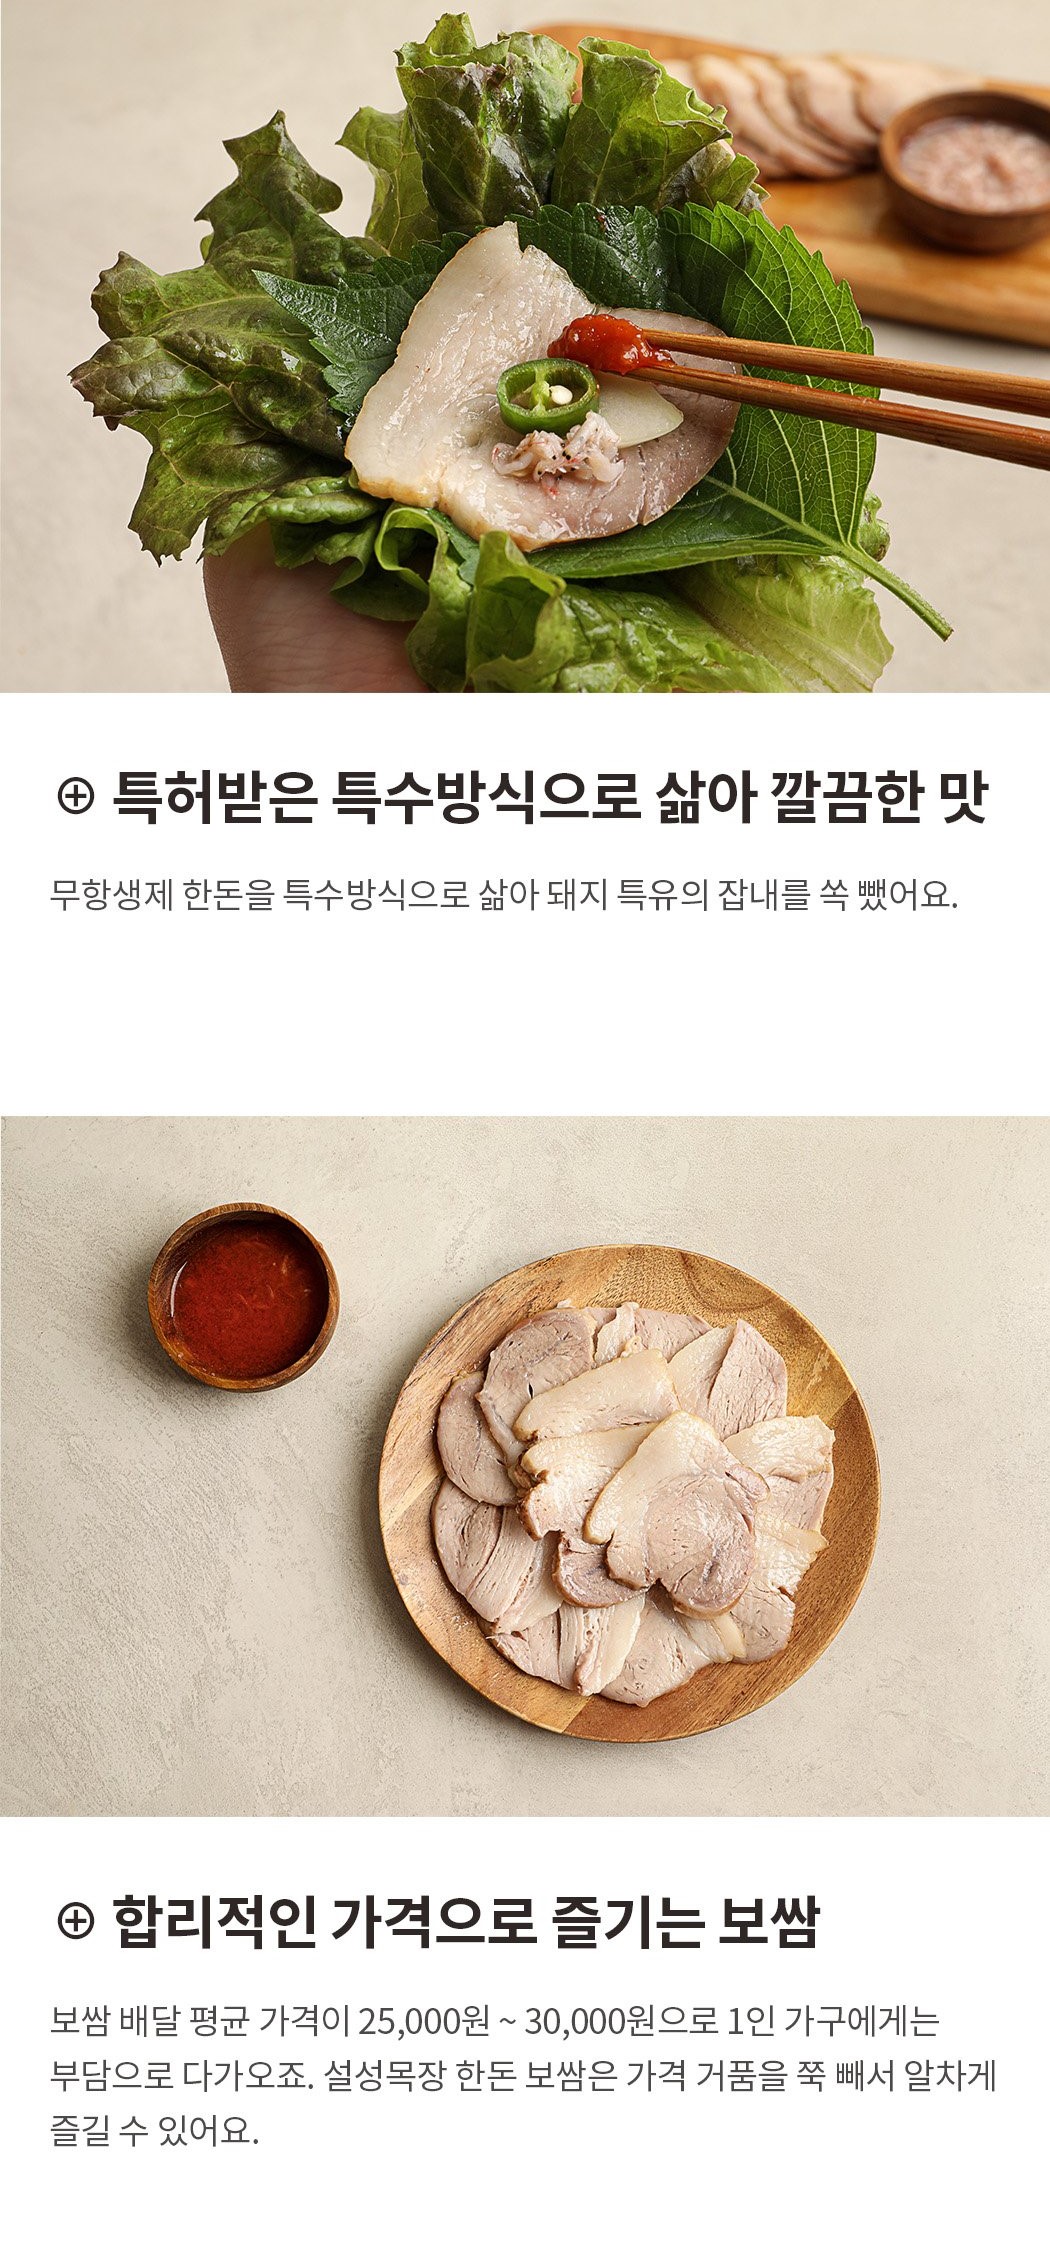 韓國食品-[Seolsung Farm] Bossam 200g